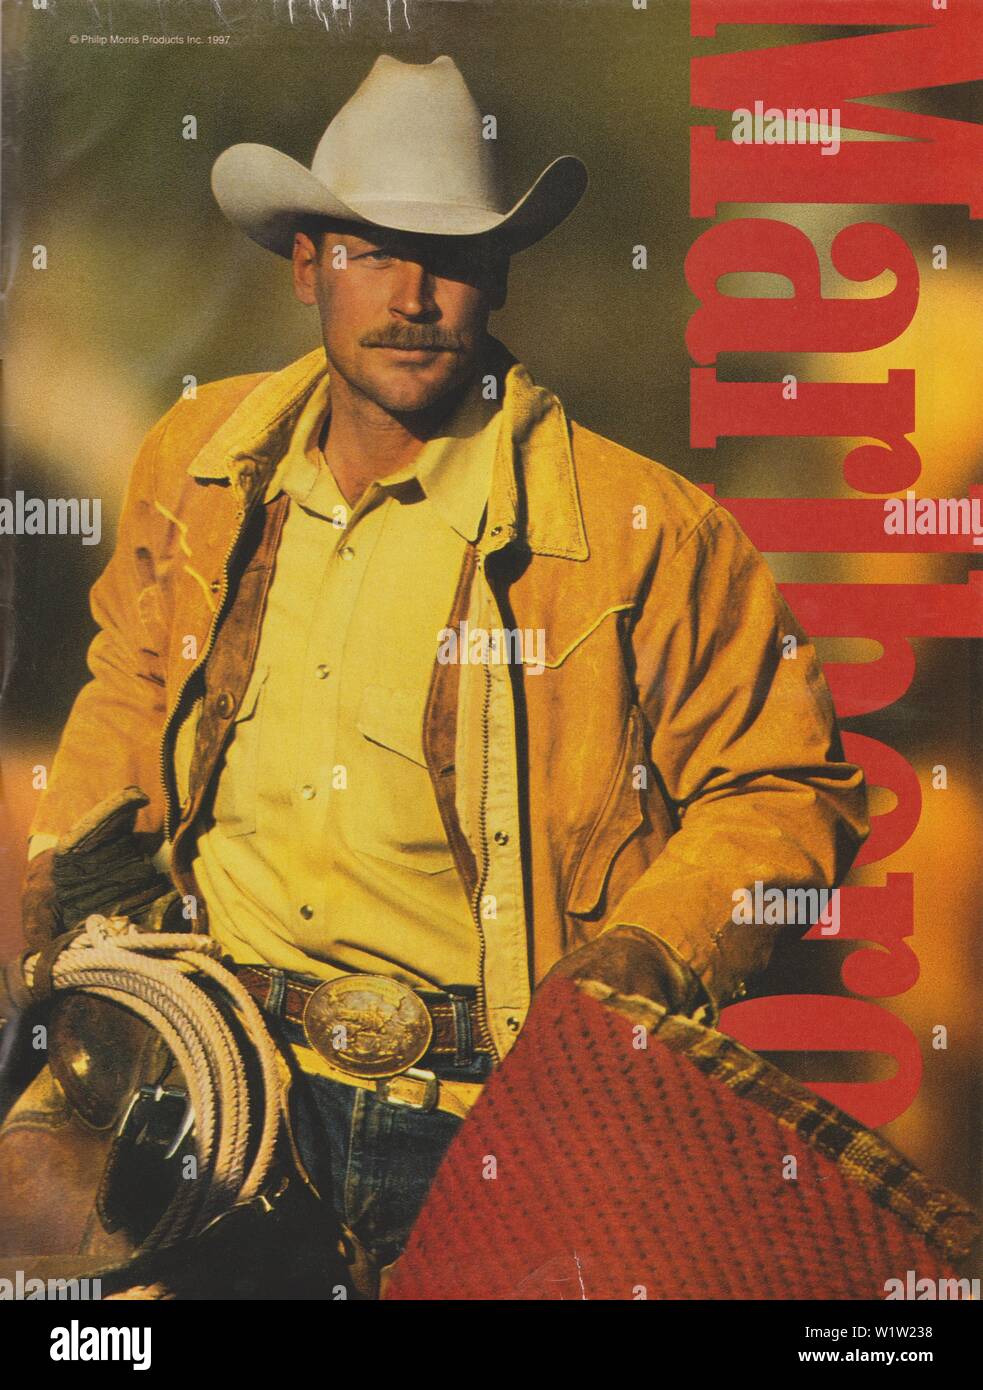 Plakat werbung Marlboro Zigaretten, Zeitschrift 1997, kein Slogan